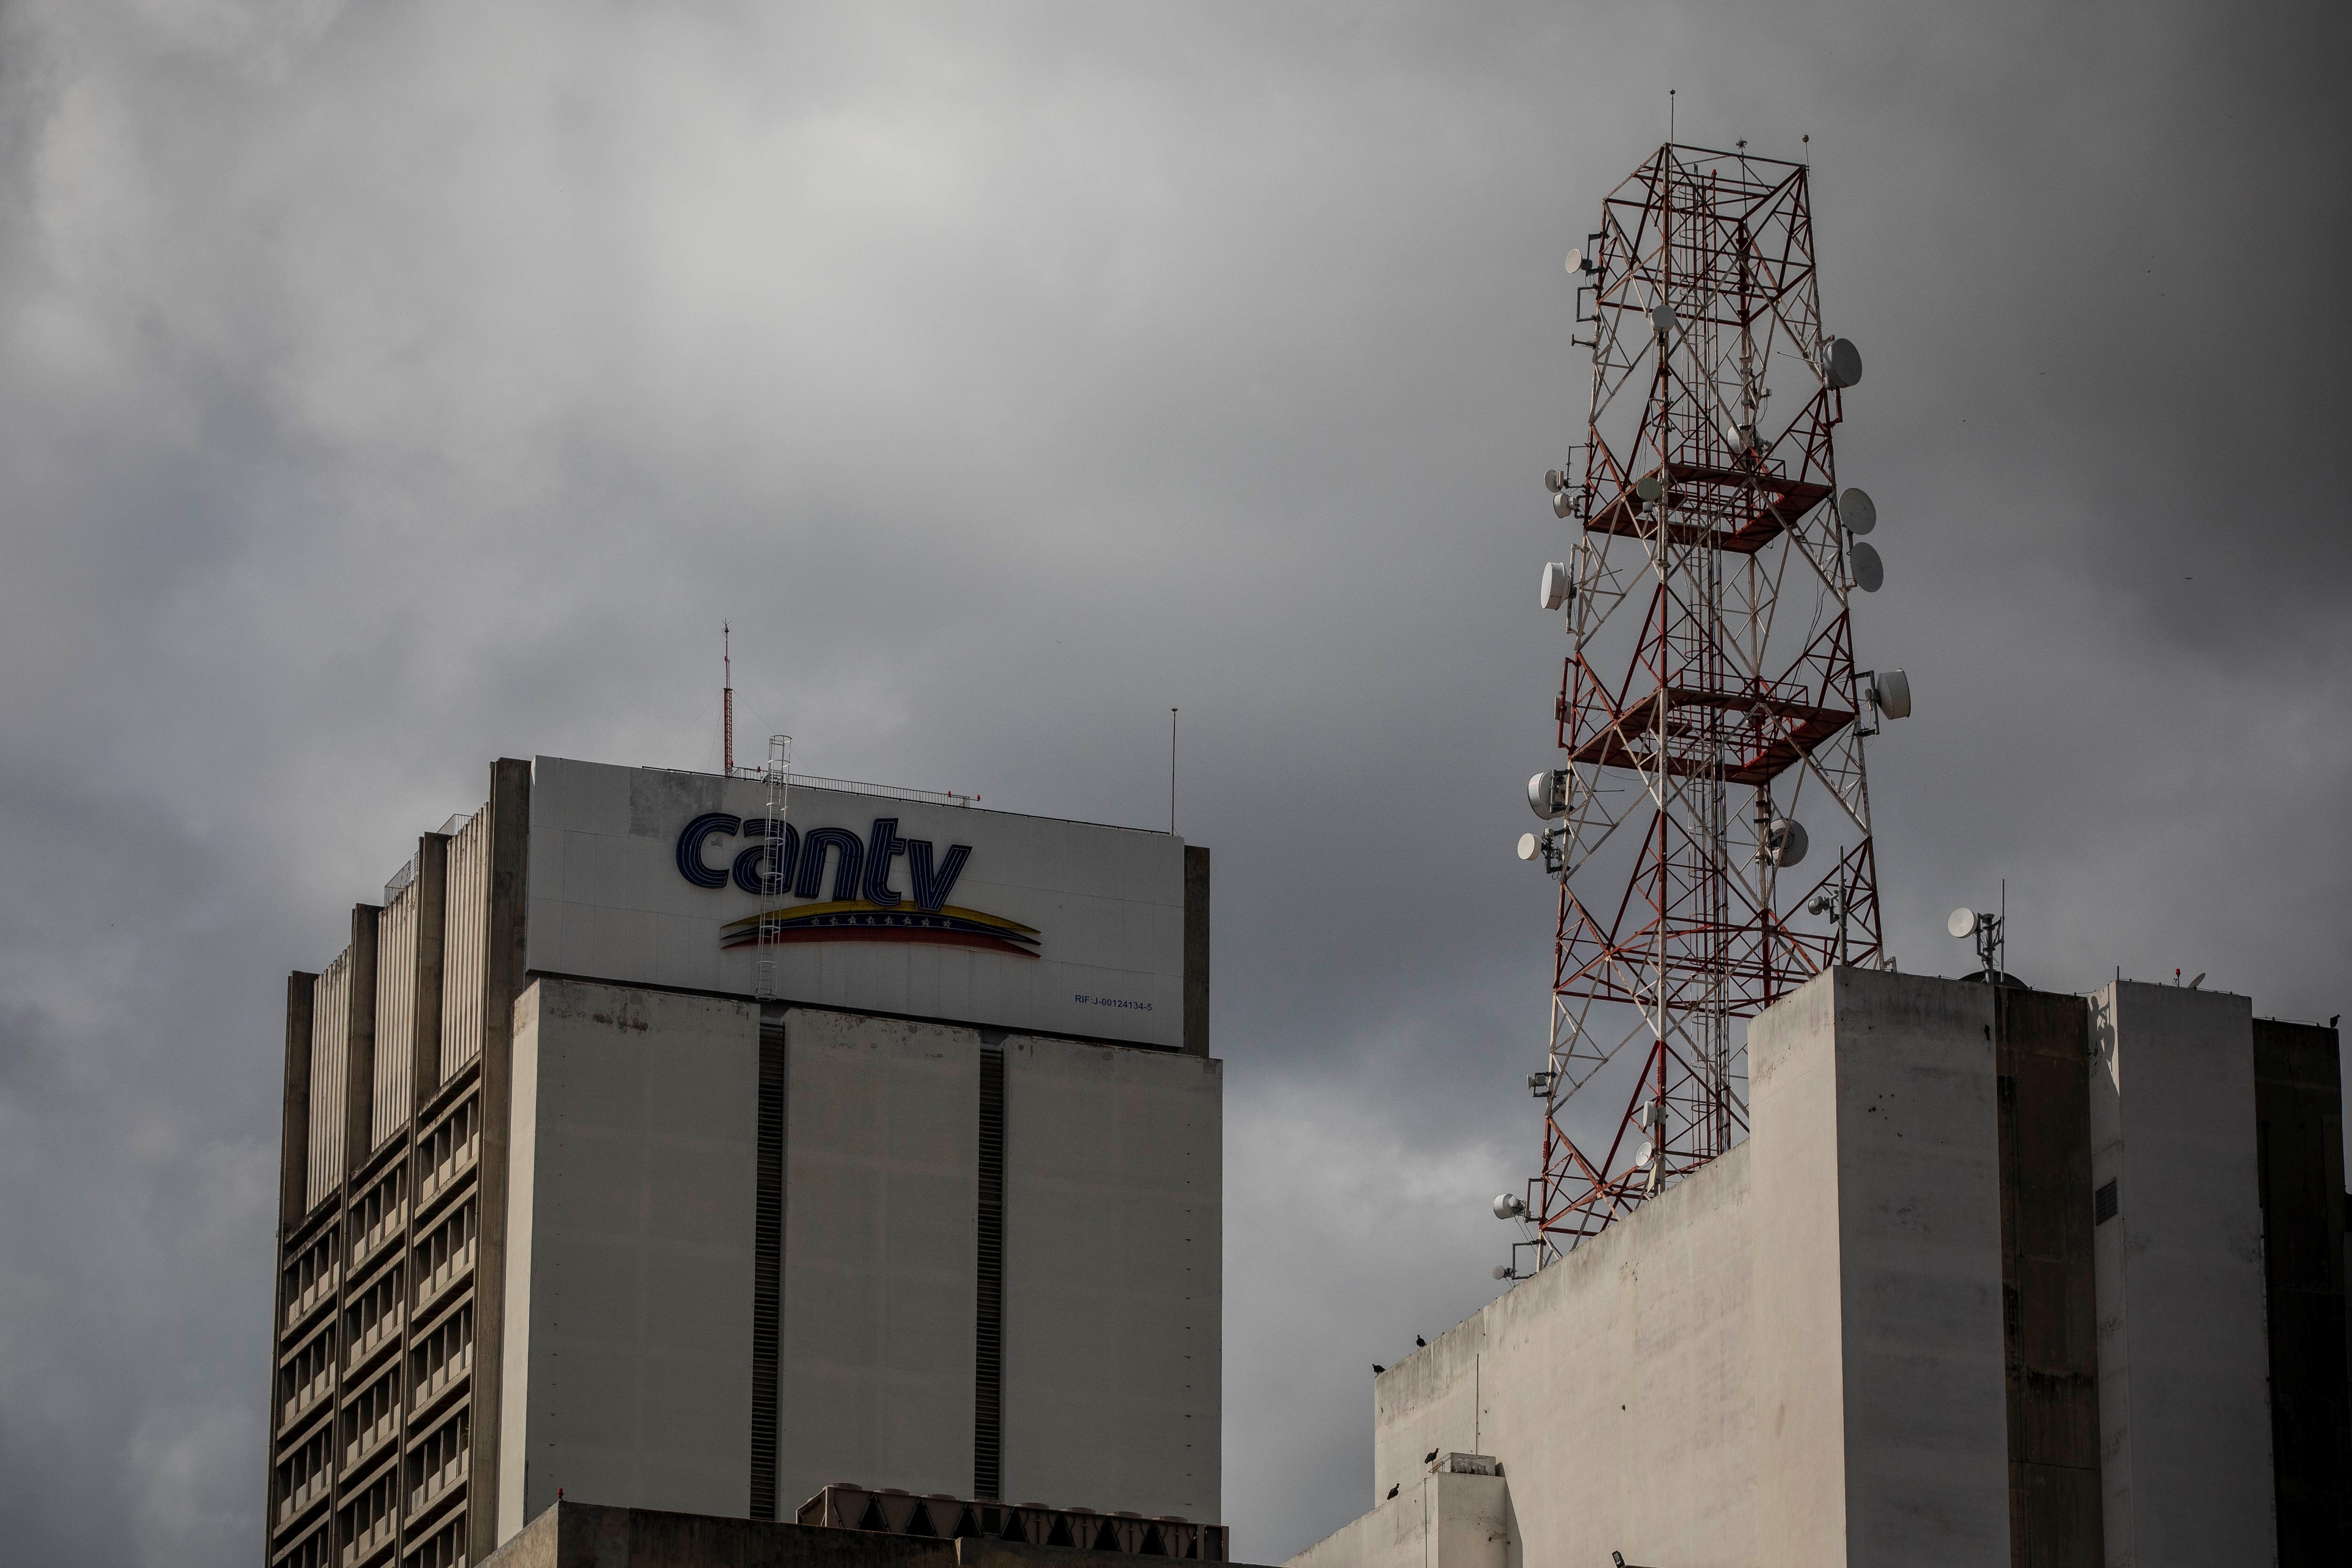 El régimen de Venezuela ofertará en la bolsa de valores acciones de empresas que fueron expropiadas por Chávez